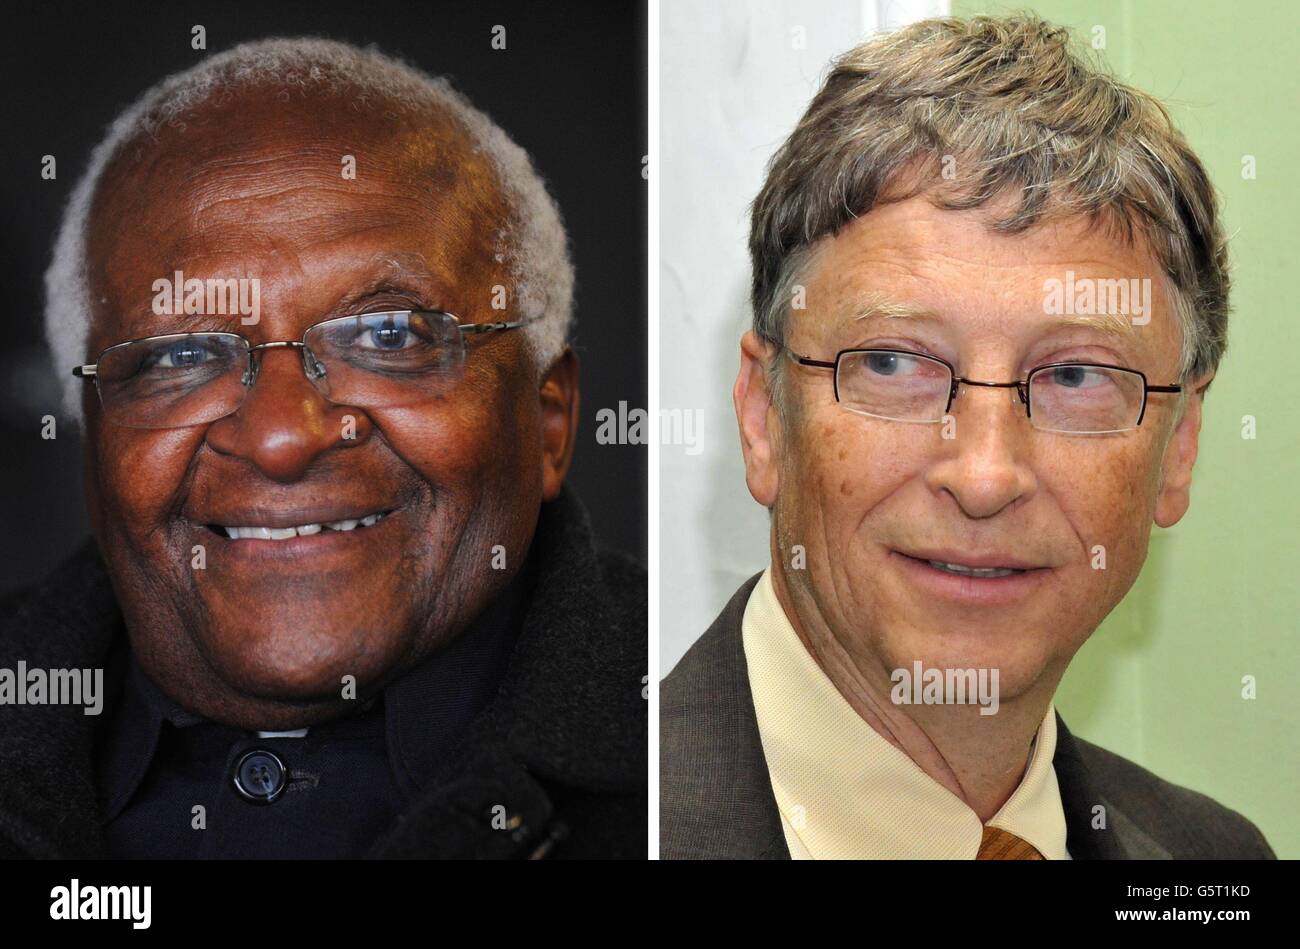 Undatierte Datei Fotos von Erzbischof Desmond Tutu und Bill Gates, die ihr Gewicht hinter eine neue Kampagne zur Bekämpfung von Unterernährung und Hunger in den Entwicklungsländern geworfen haben. Stockfoto